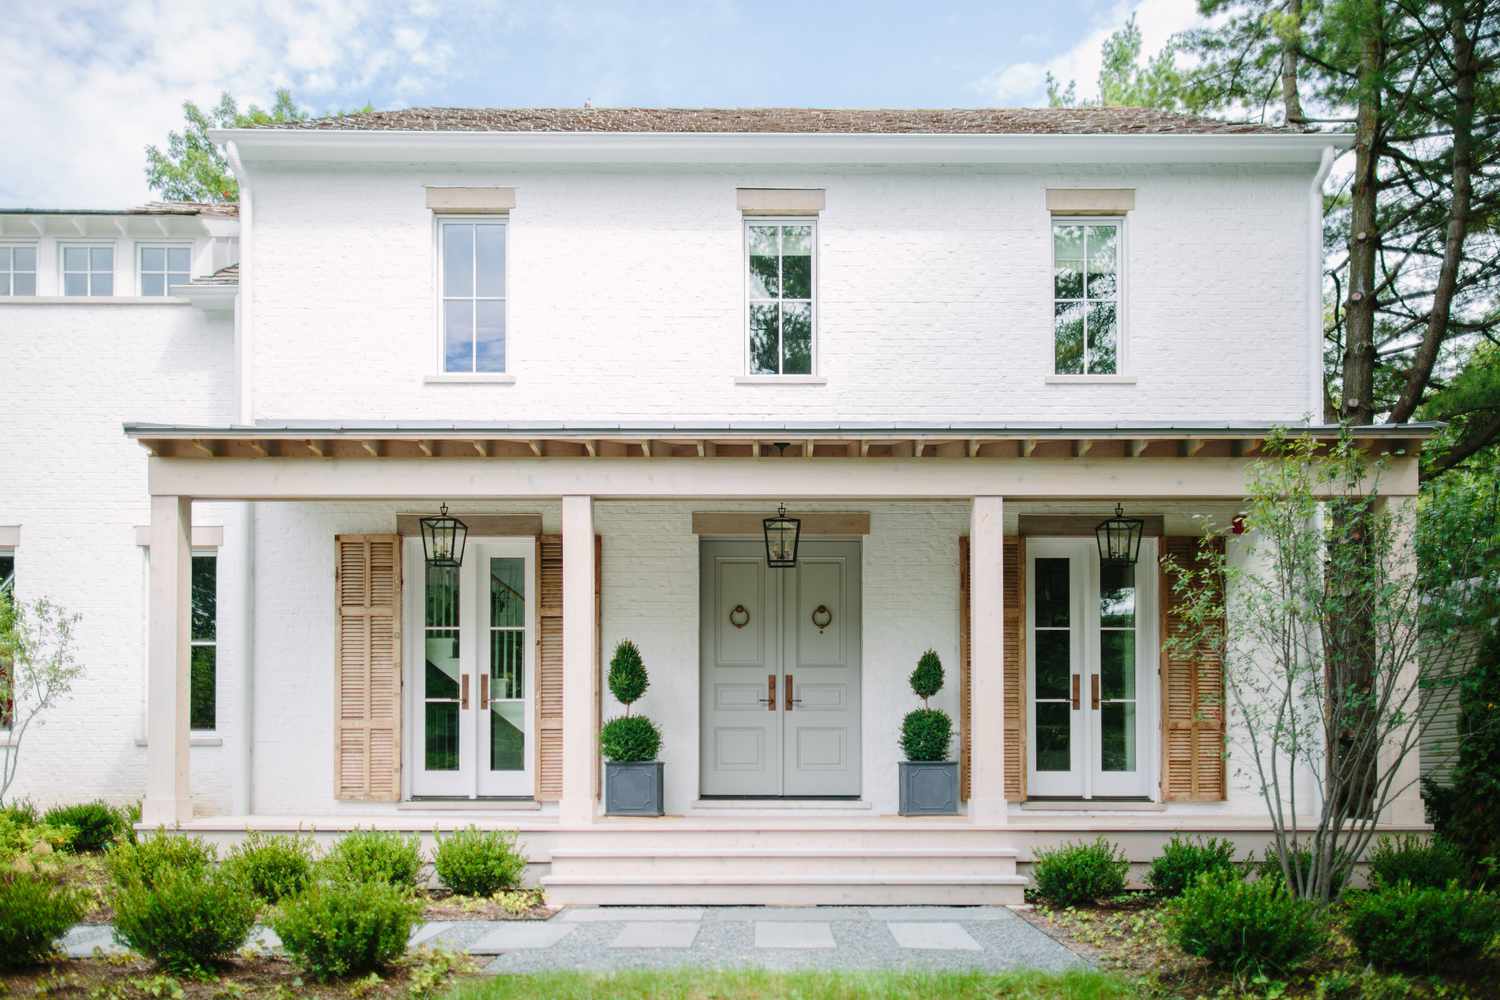 Casa branca com janelas grandes e persianas de madeira